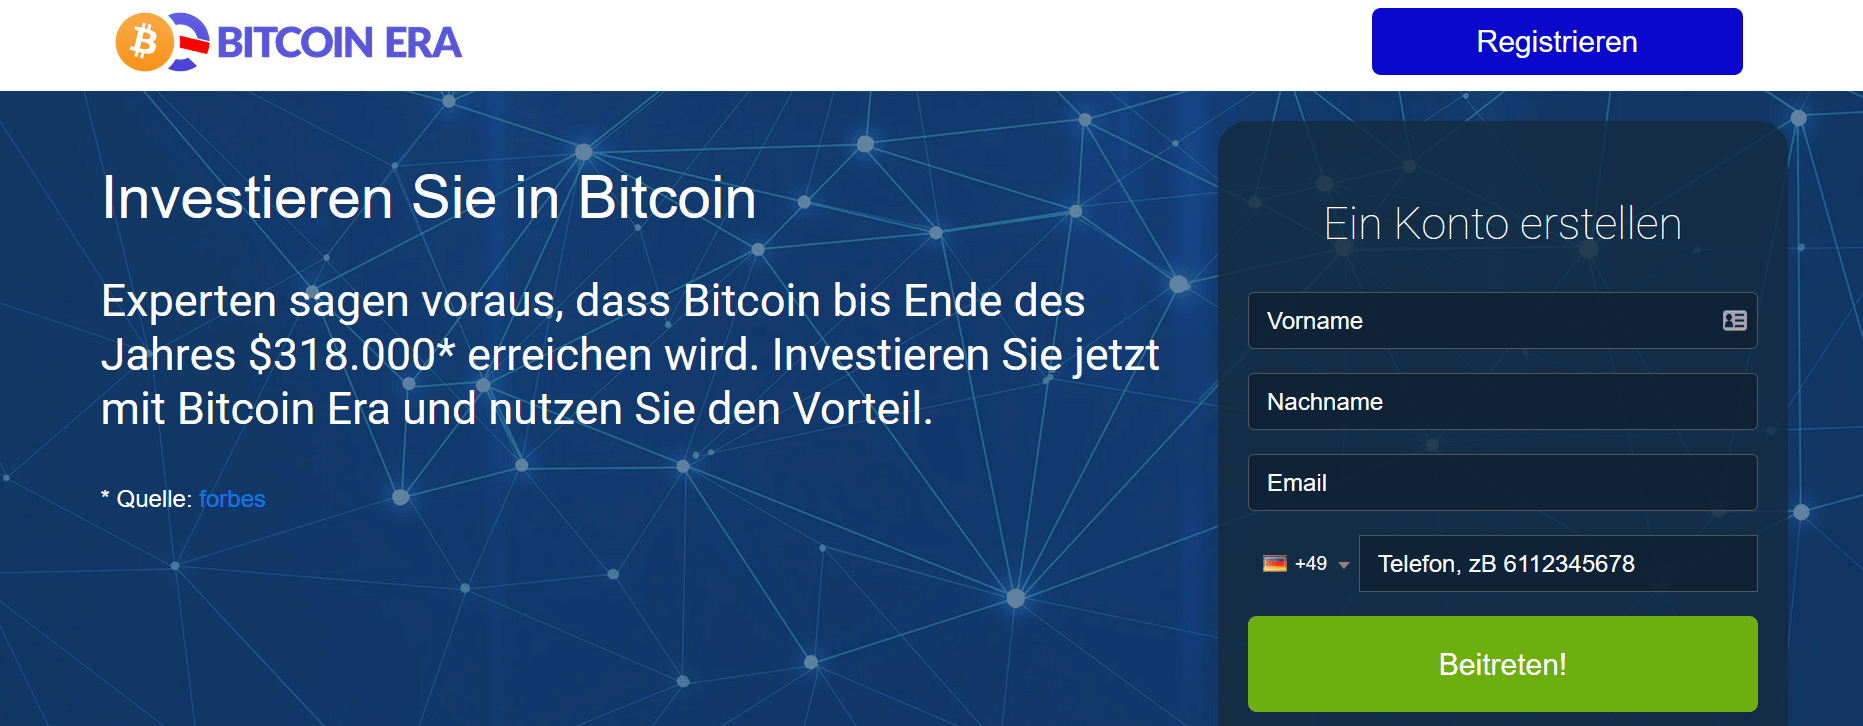 Bitcoin Era Test